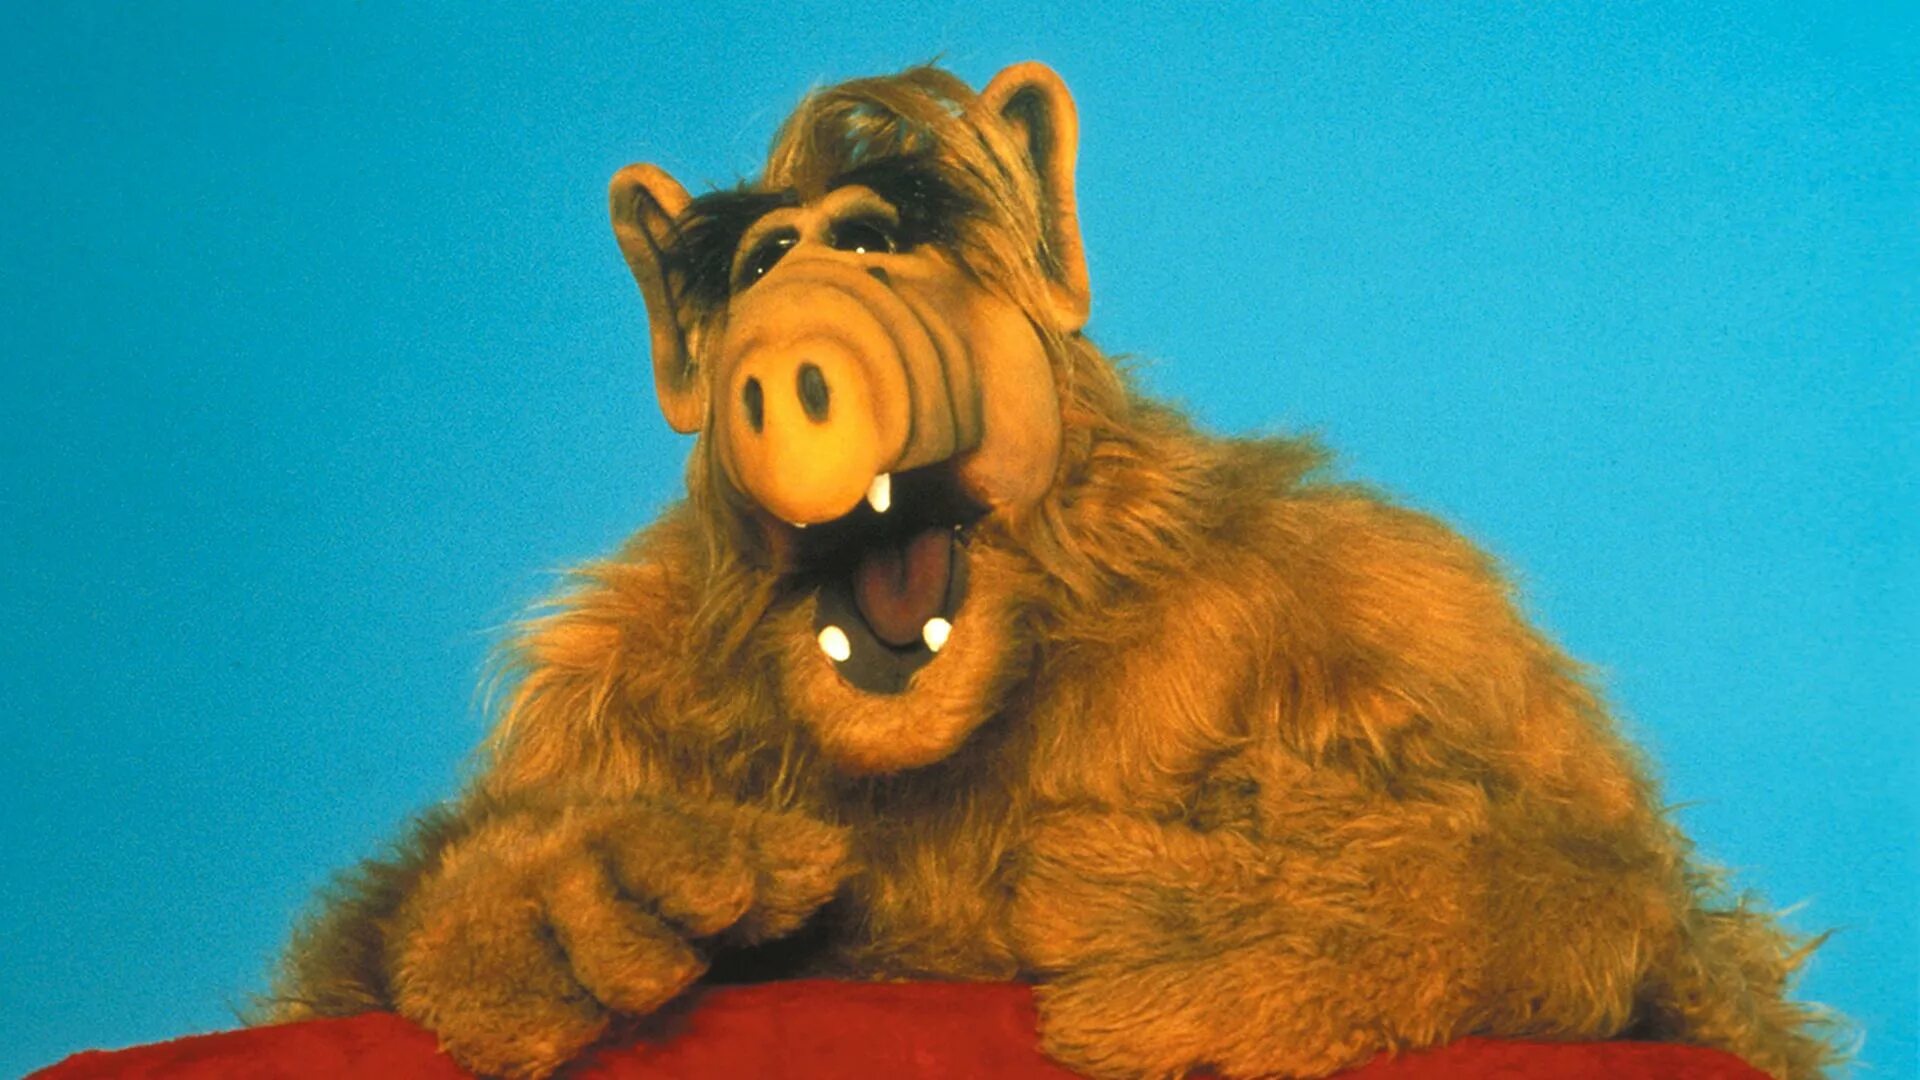 Альф 1 22. Alf (Альф), 1986–1990.